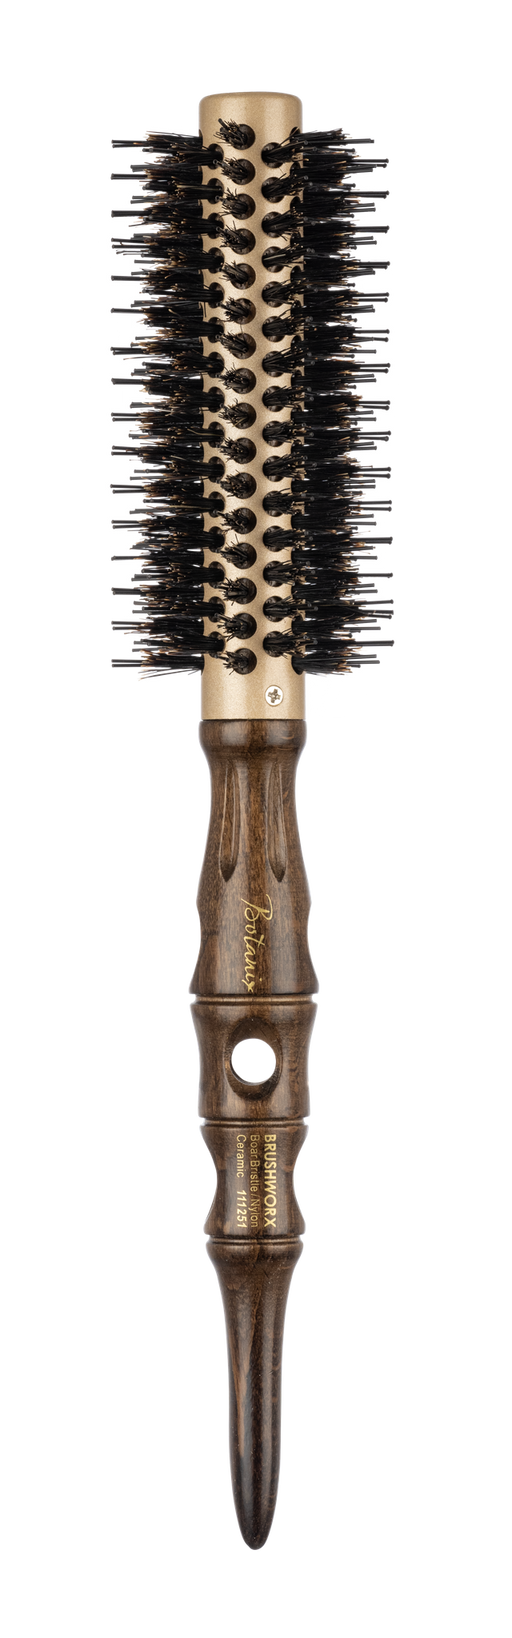 Brushworx Botanix Porcupine Radial Hair Brush